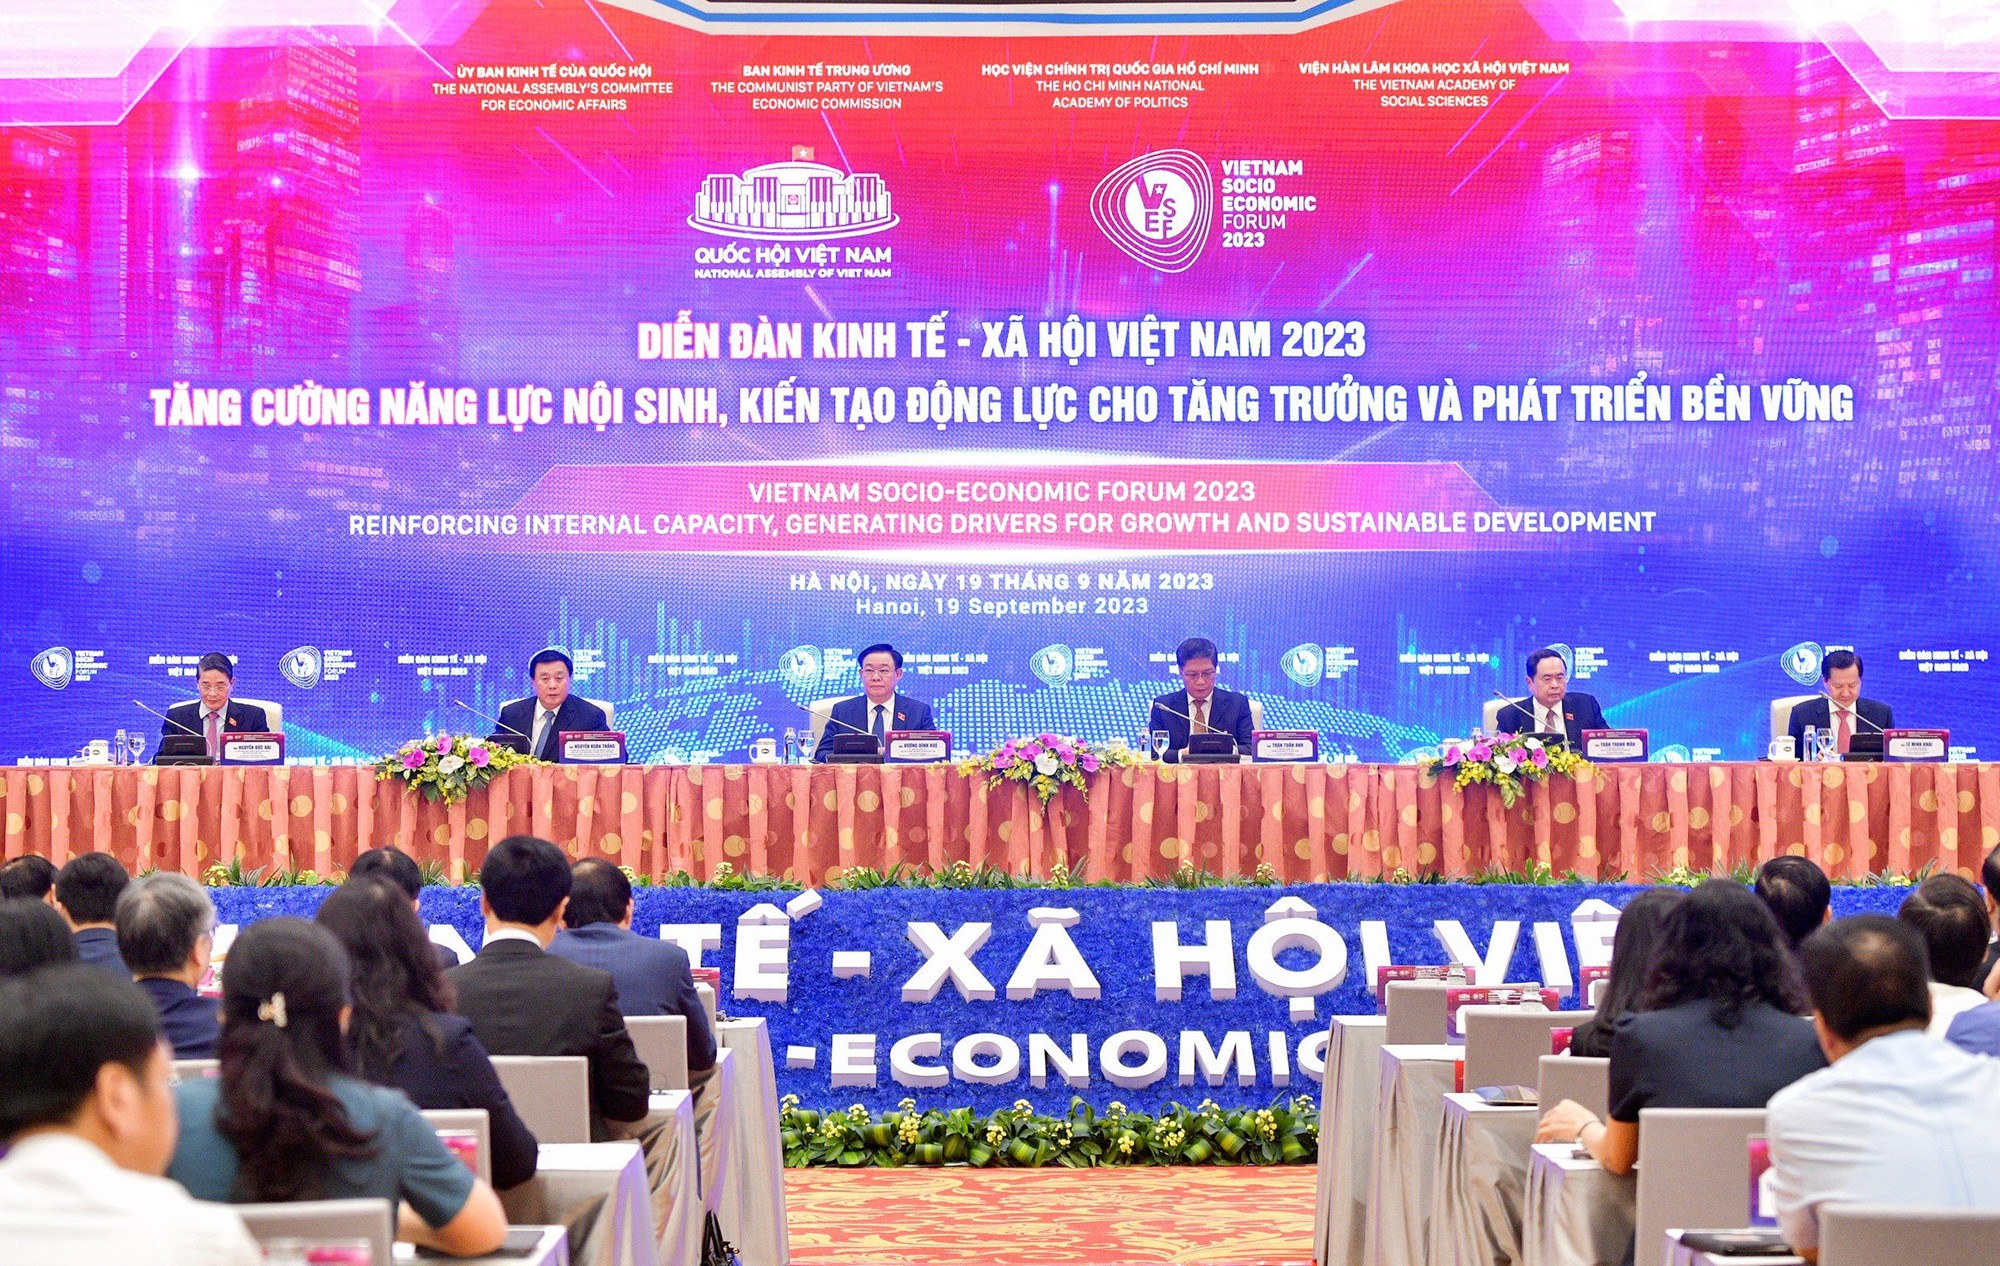 Kinh tế Việt Nam vững vàng vượt qua thách thức trước những cơn gió ngược - Ảnh 2.